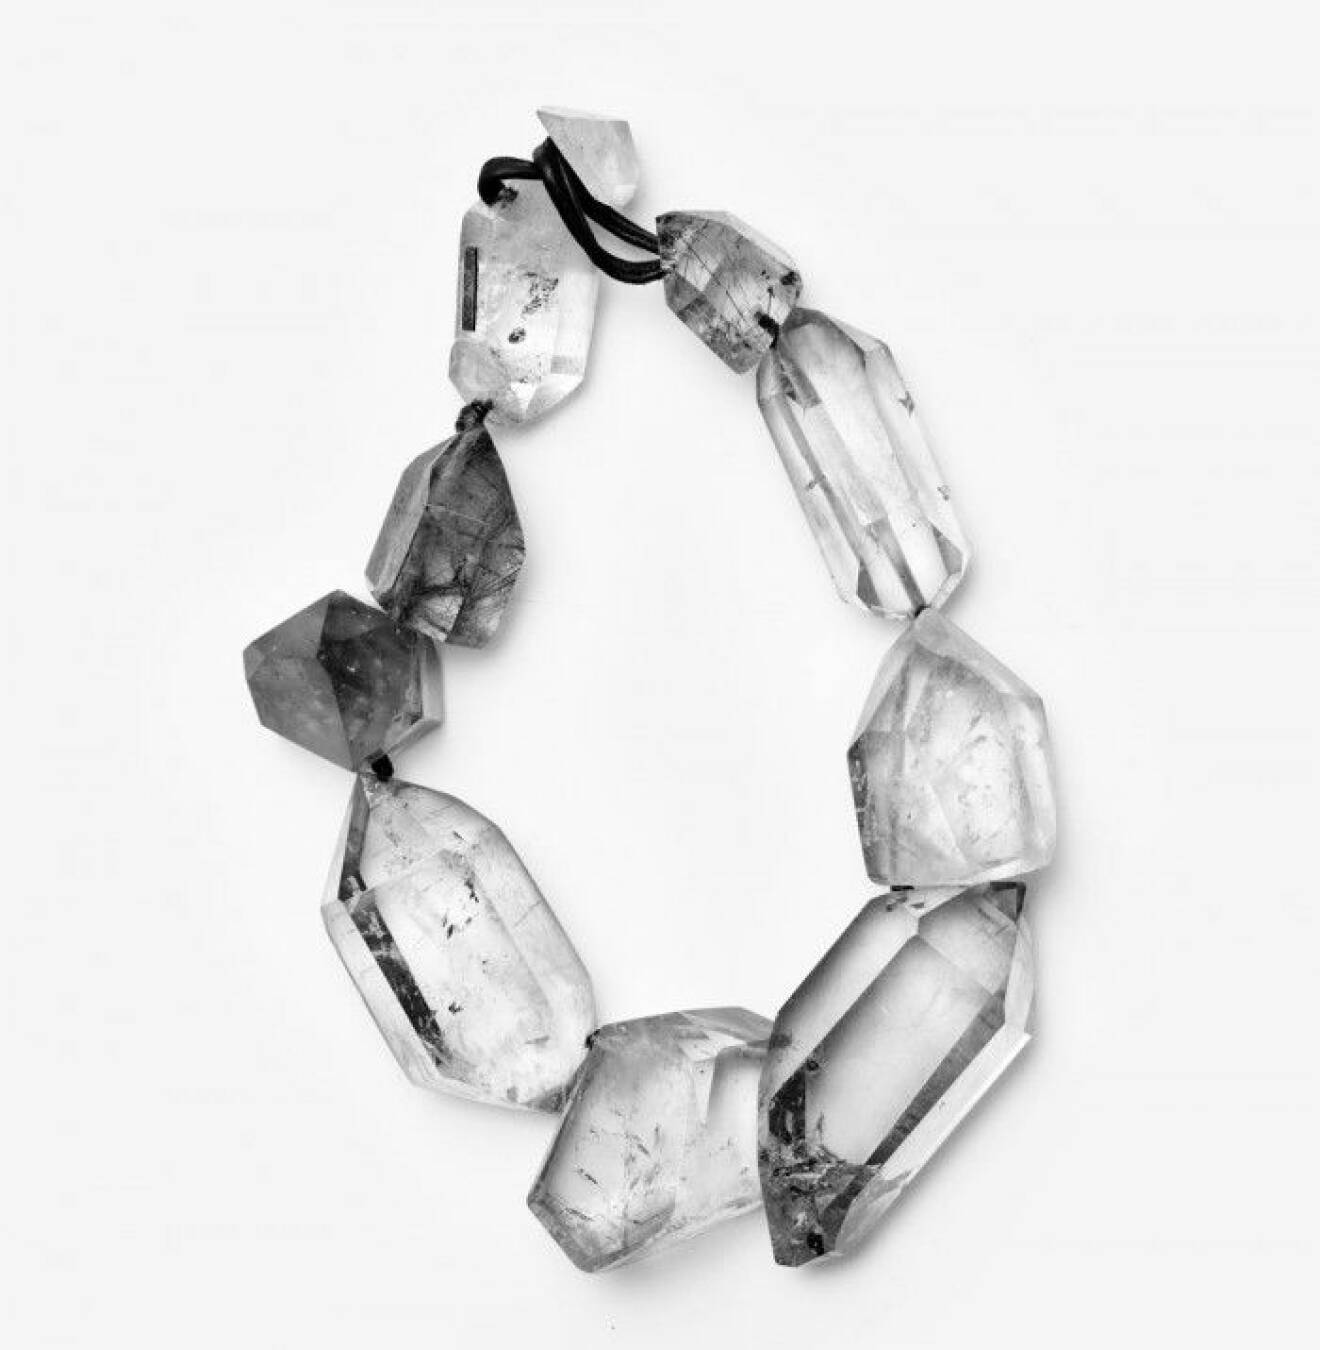 2. Danska smyckesmärket Monies designar och tillverkar unika smycken i avantgardistiska stil. Smyckena är stora, sticker ut och är ofta tillverkade i begränsad upplaga, en del är till och med helt unika och finns bara i ett exemplar. Det kristalliknade halsbandet i akryl kostar ca 4 500 kr. Smyckena säljs i de egna butikerna som finns i några europeiska storstäder, samt hos utvalda återförsäljare.